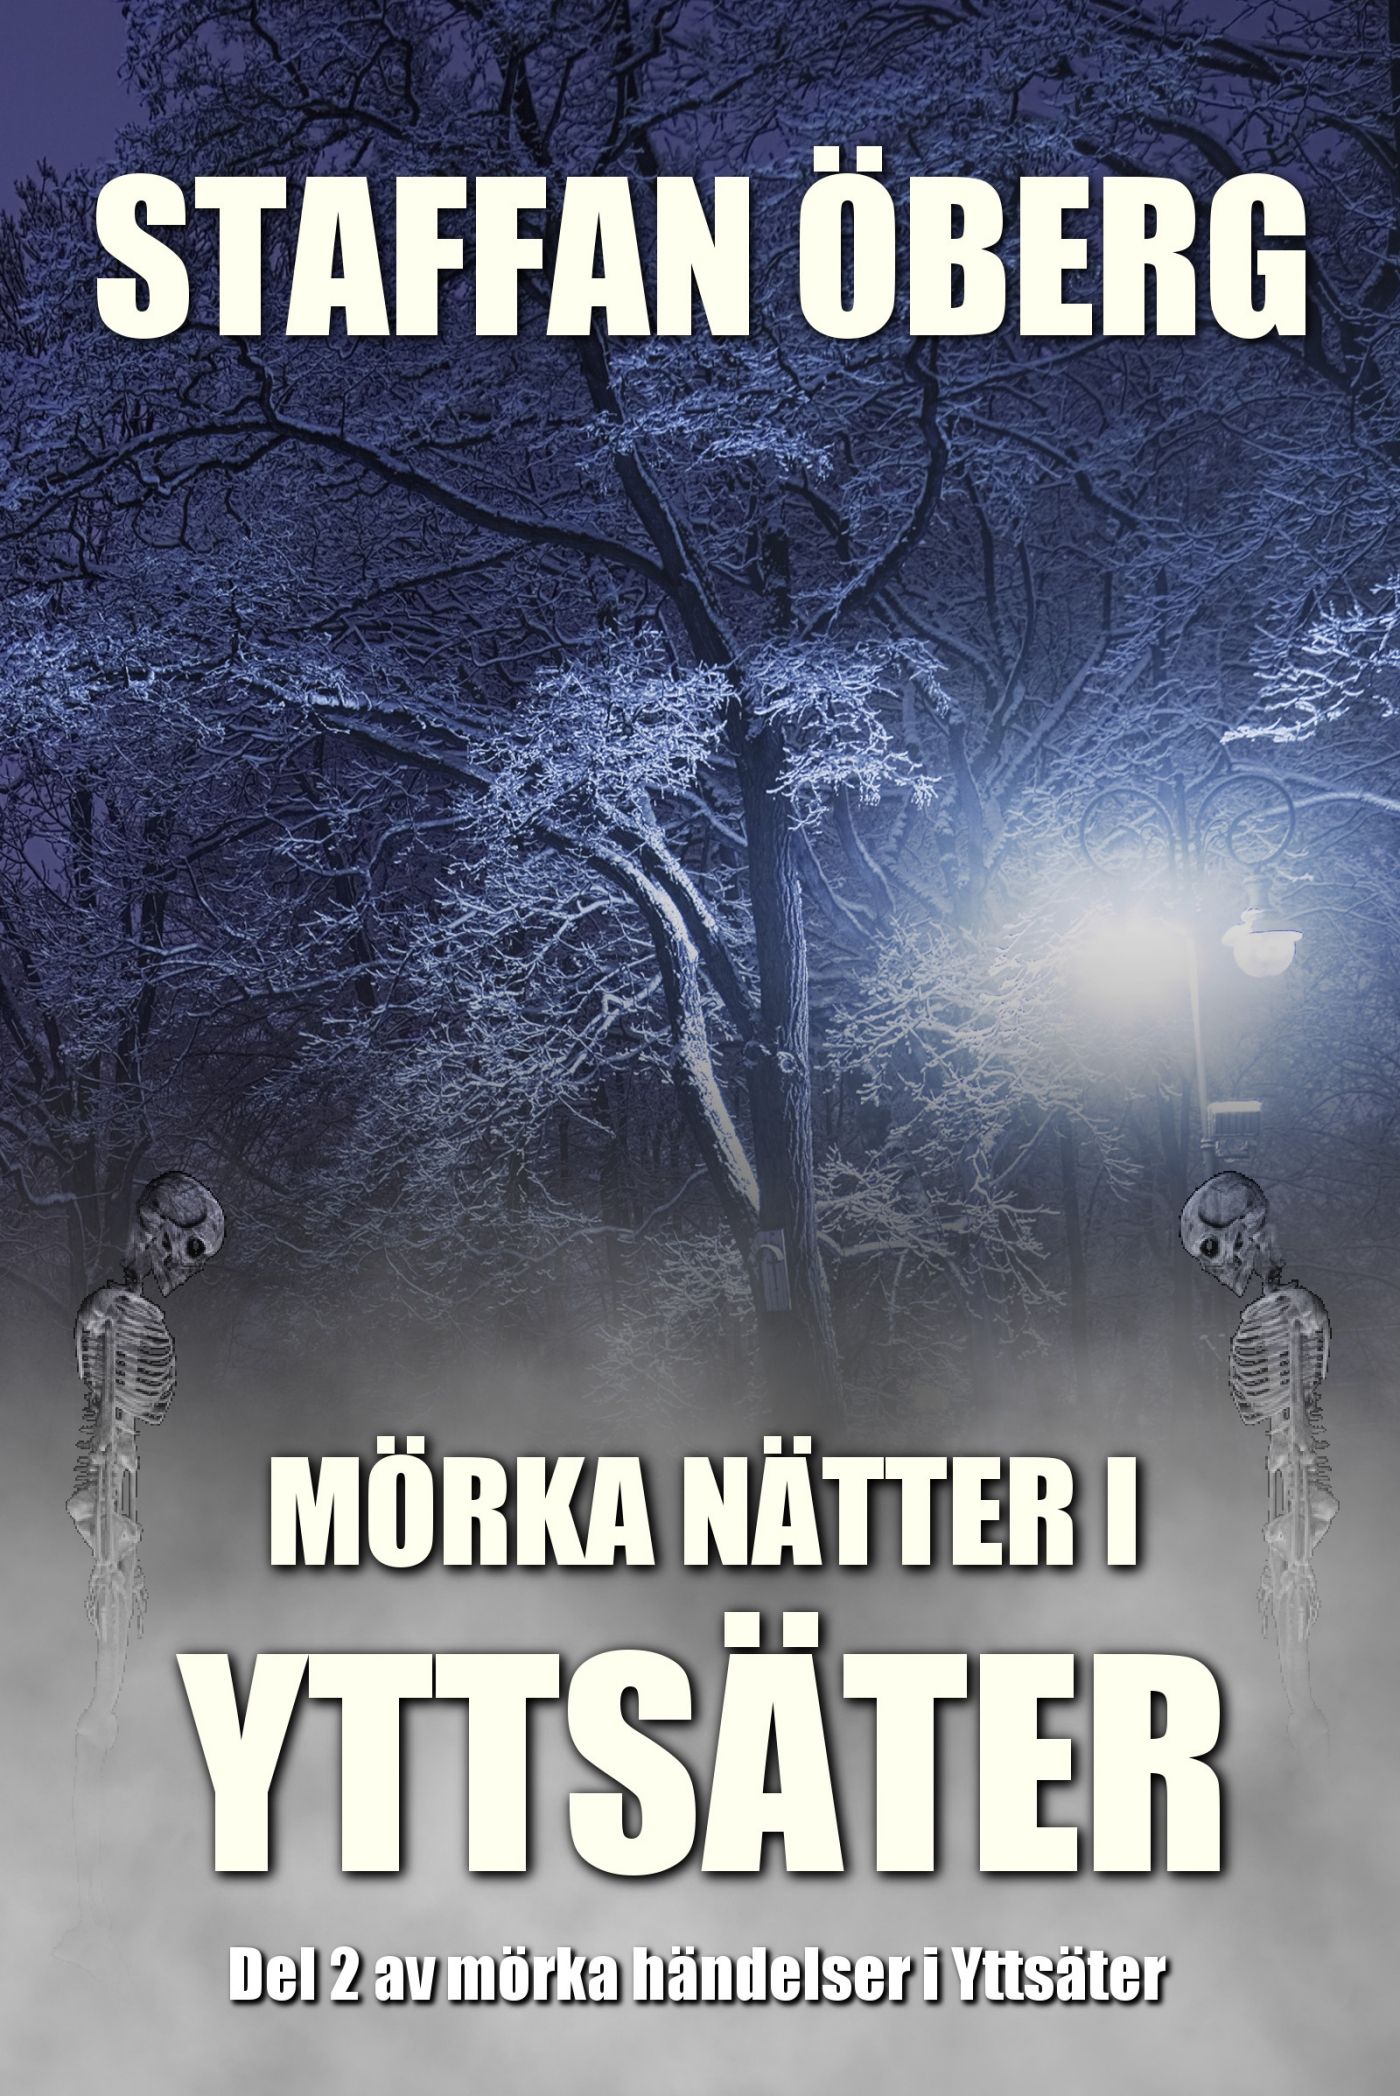 Mörka nätter i Yttsäter, ljudbok av Staffan Öberg